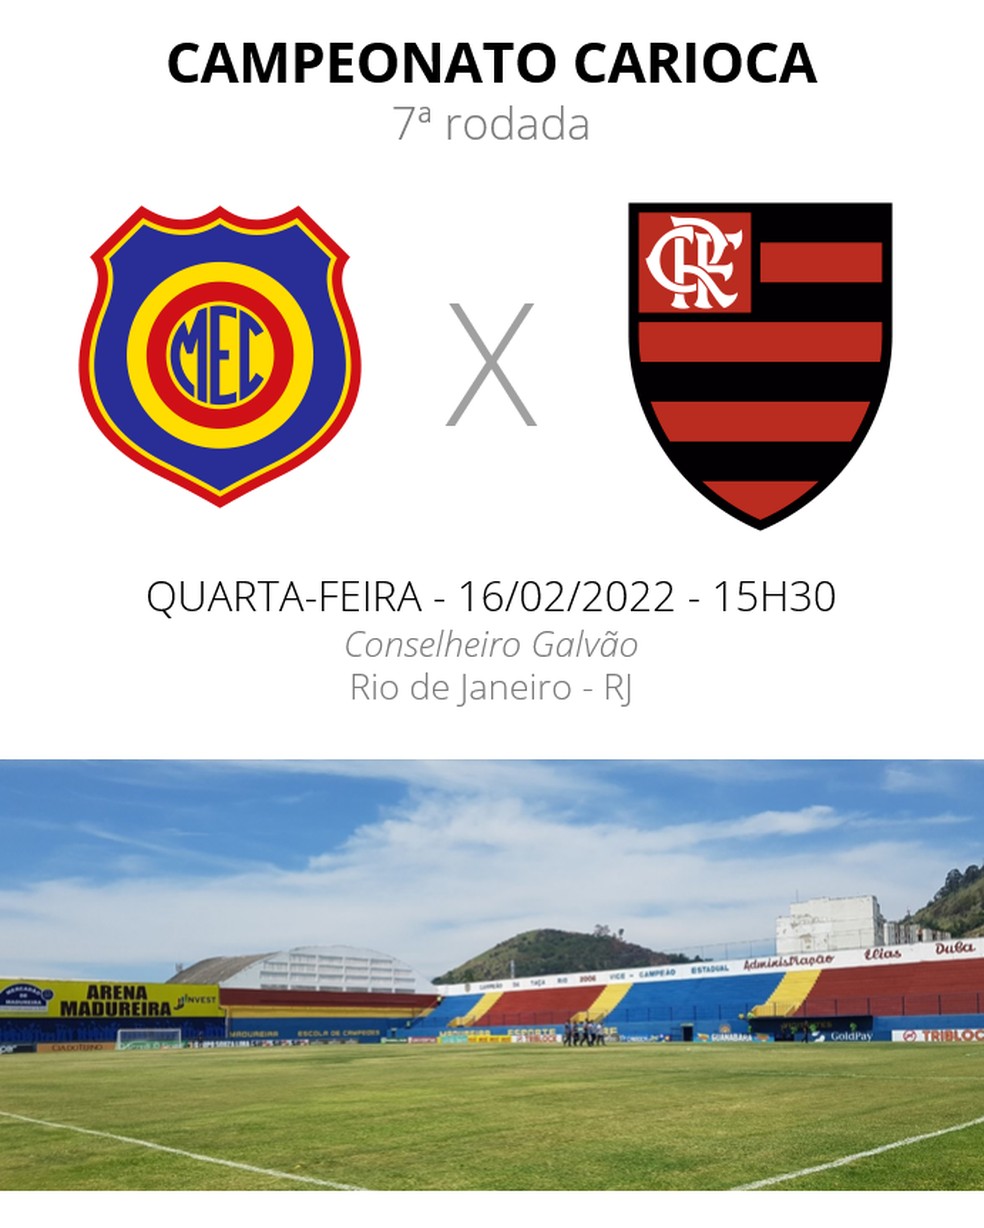 Onde vai ser o jogo do Flamengo e Madureira hoje?